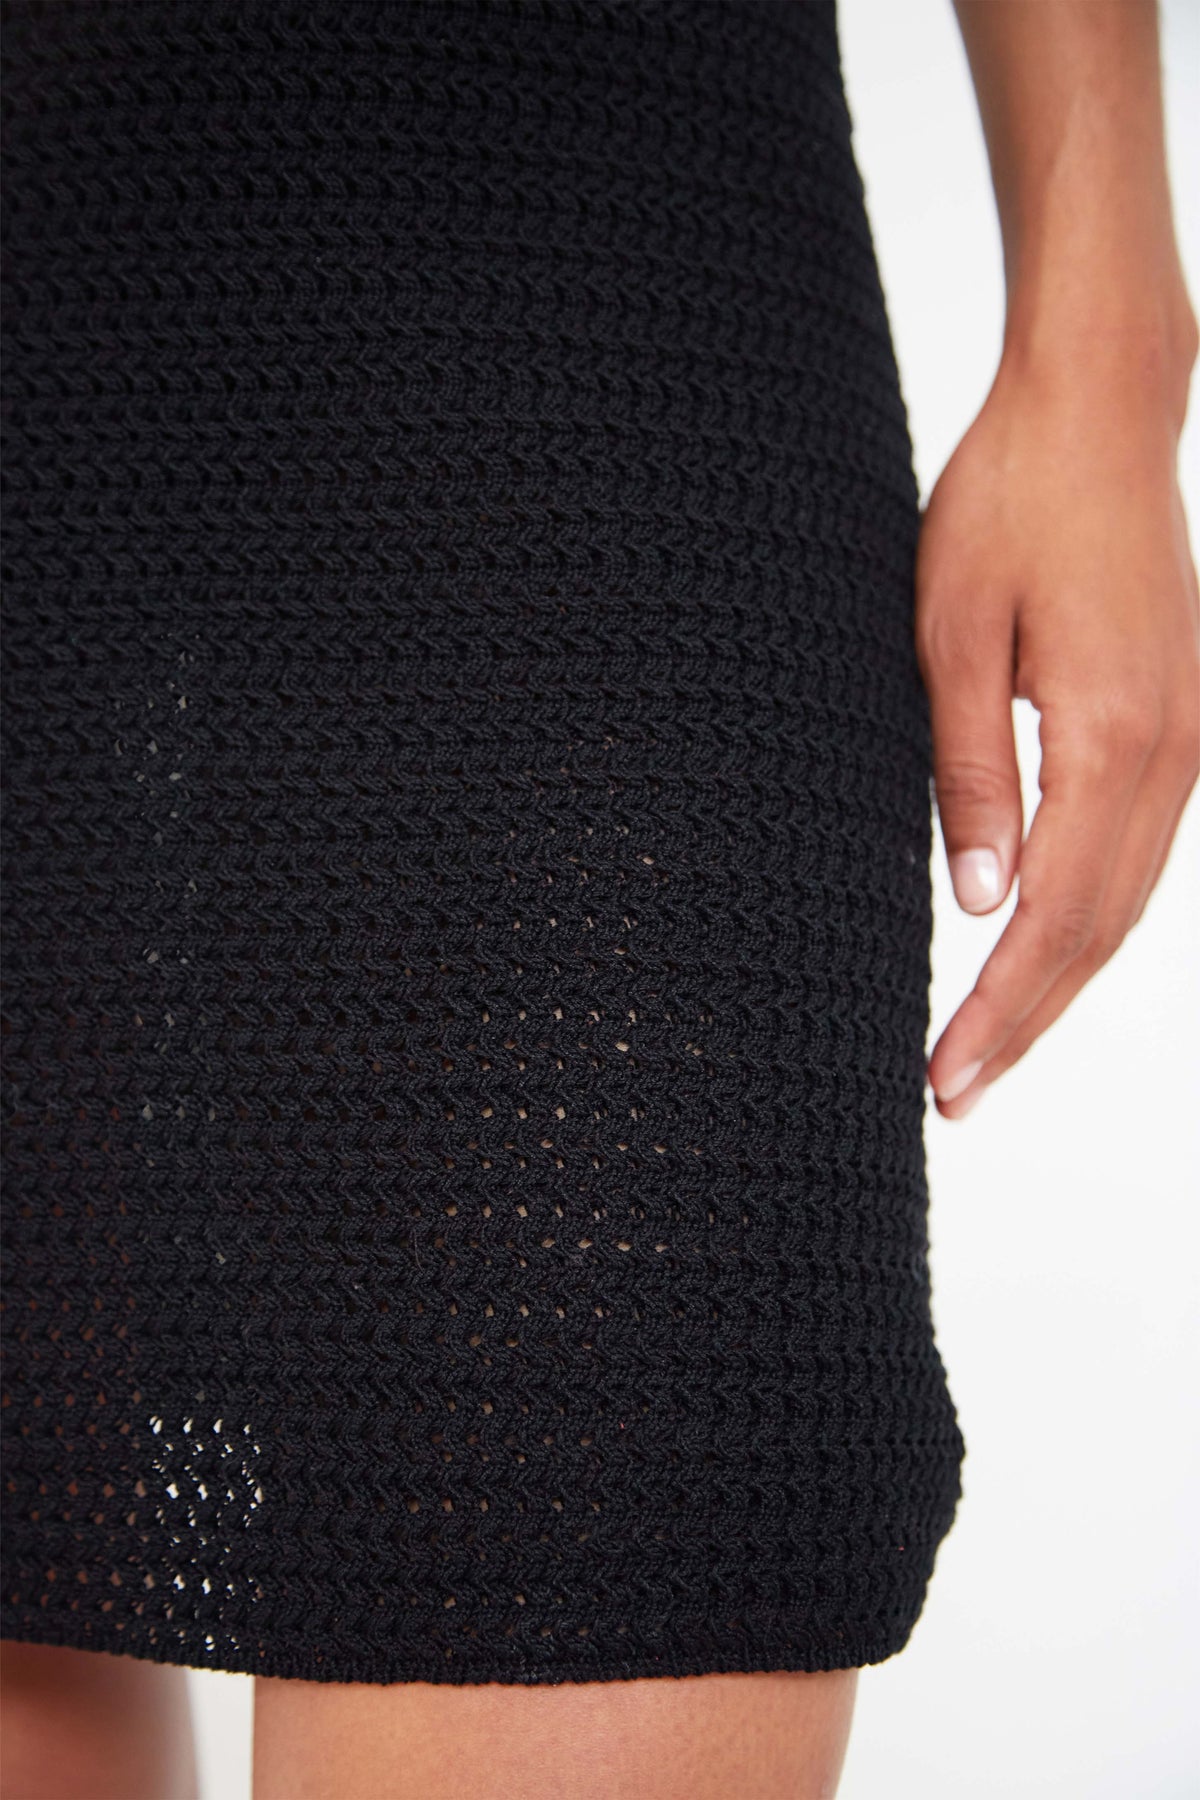 Prada crochet dress